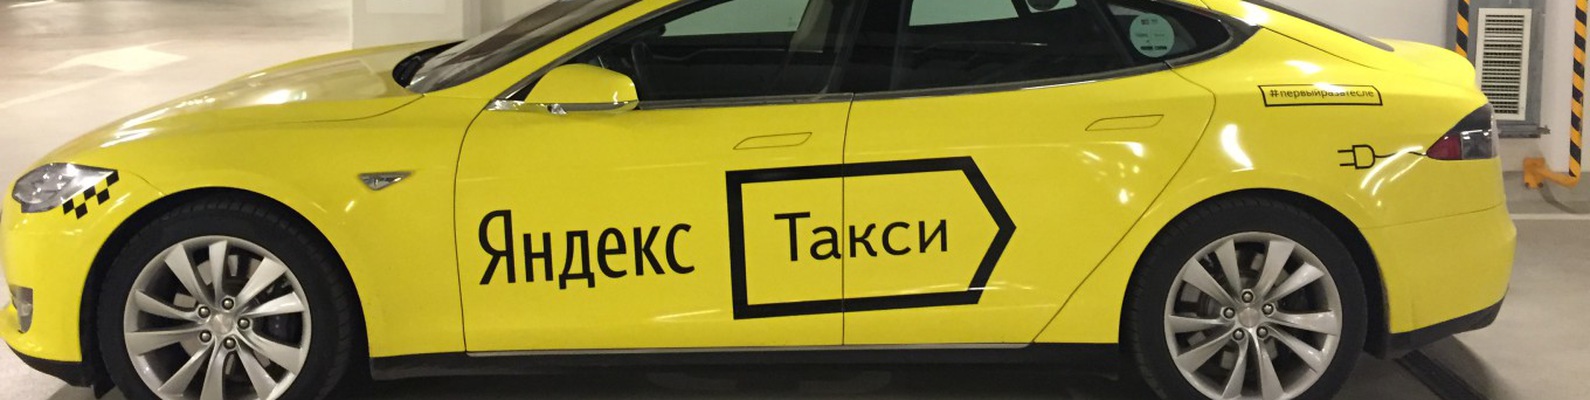 Авто для Яндекс.Такси